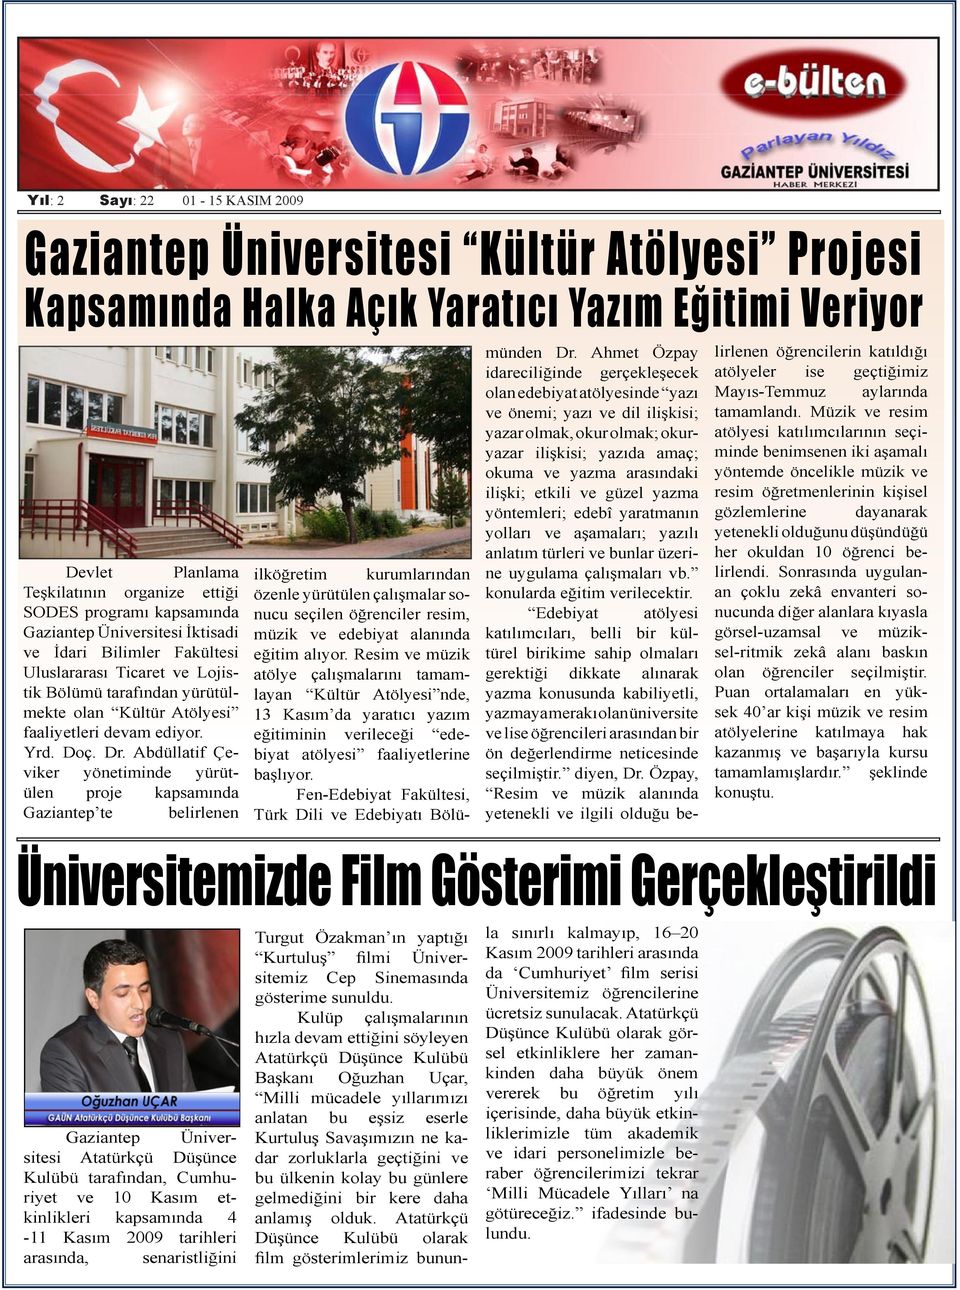 Abdüllatif Çeviker yönetiminde yürütülen proje kapsamında Gaziantep te belirlenen münden Dr.